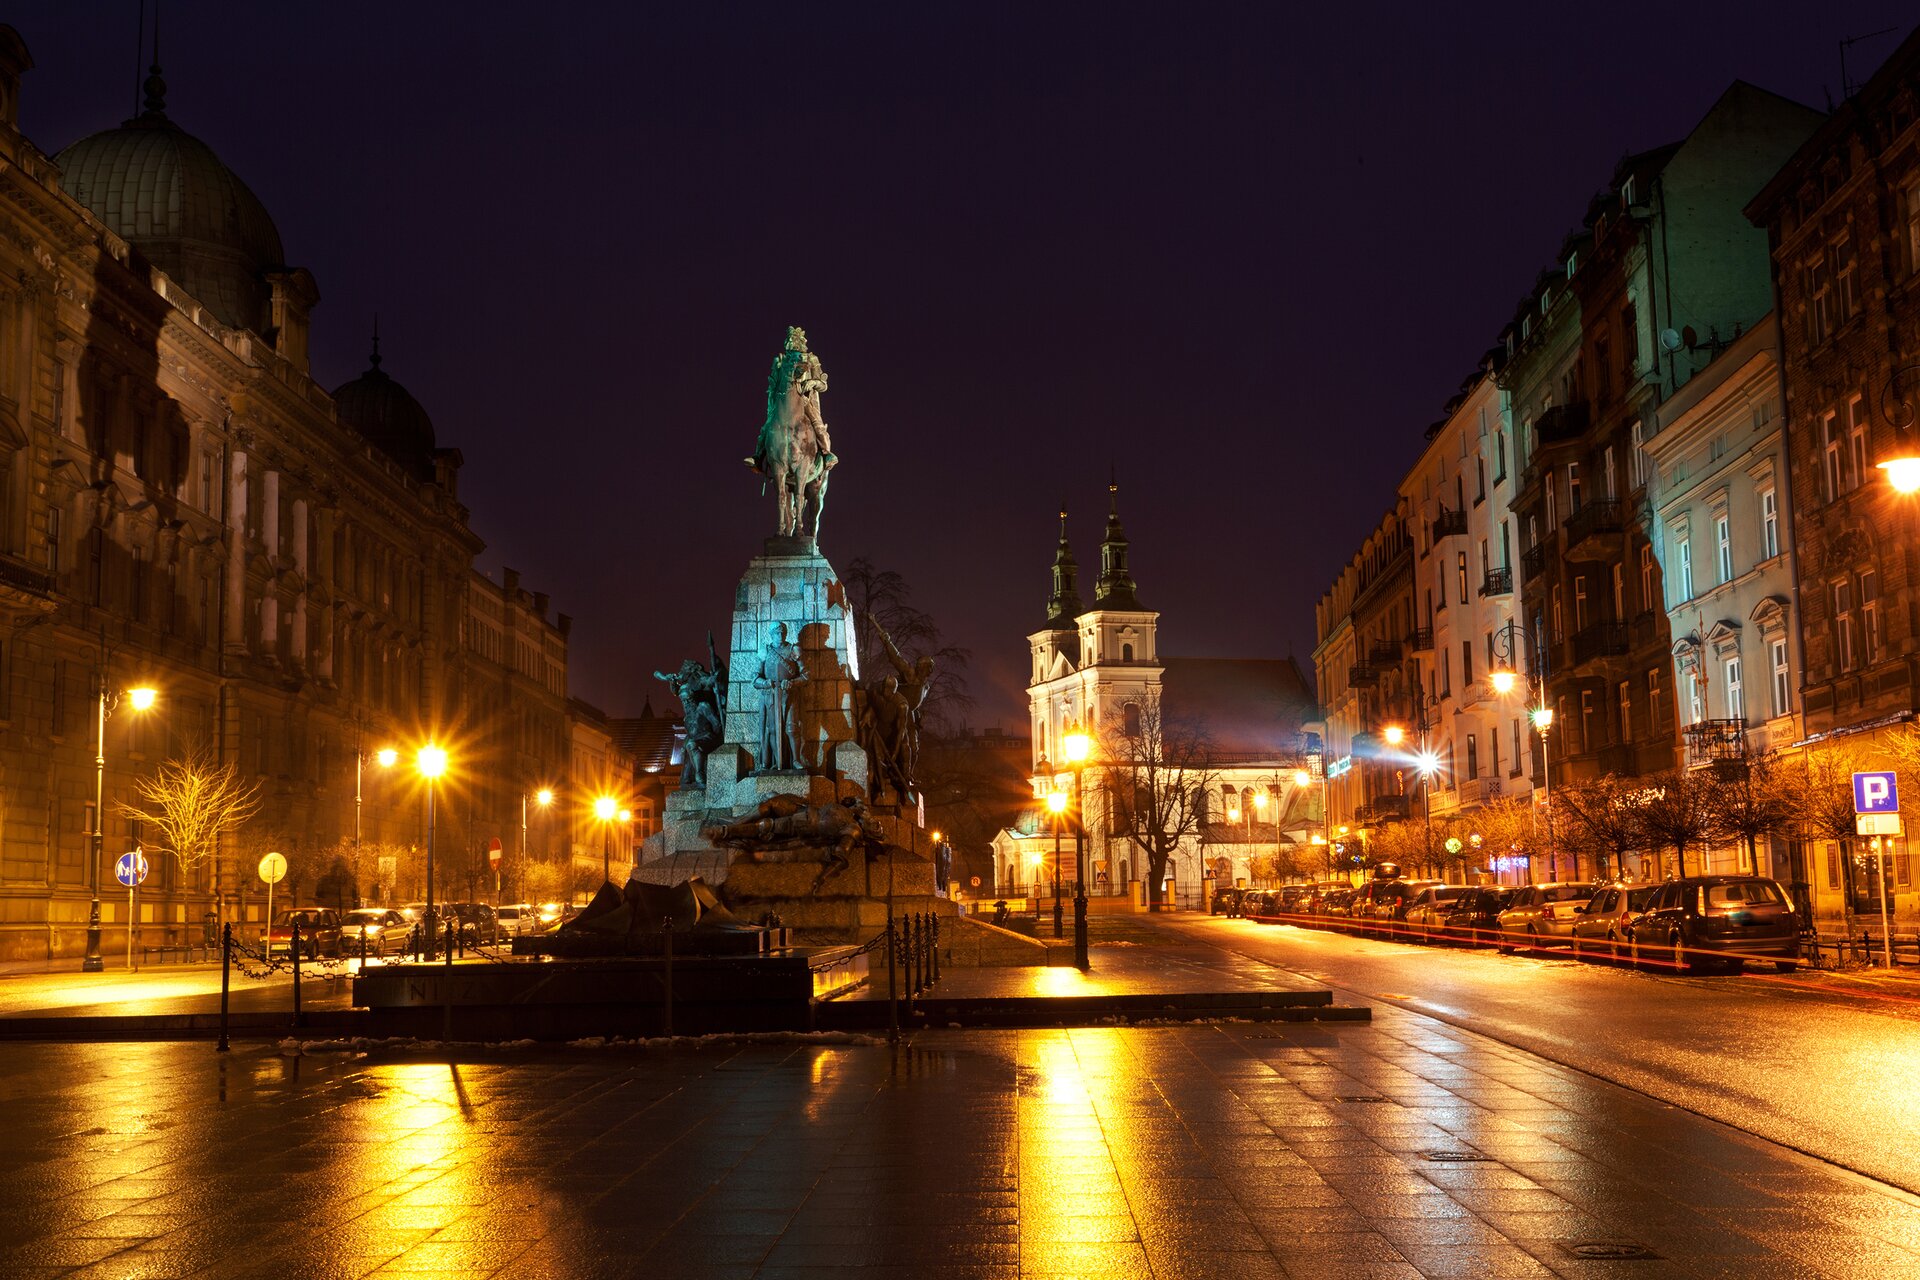 Ilustracja przedstawia pomnik Grunwaldzki w Krakowie. Zdjęcie ukazuje monument w nocnej, miejskiej scenerii. Pomnik oświetlony jest błękitnym światłem. Na pomniku znajduje się postać króla -Władysława Jagiełły na koniu, poniżej postać księcia Witolda.